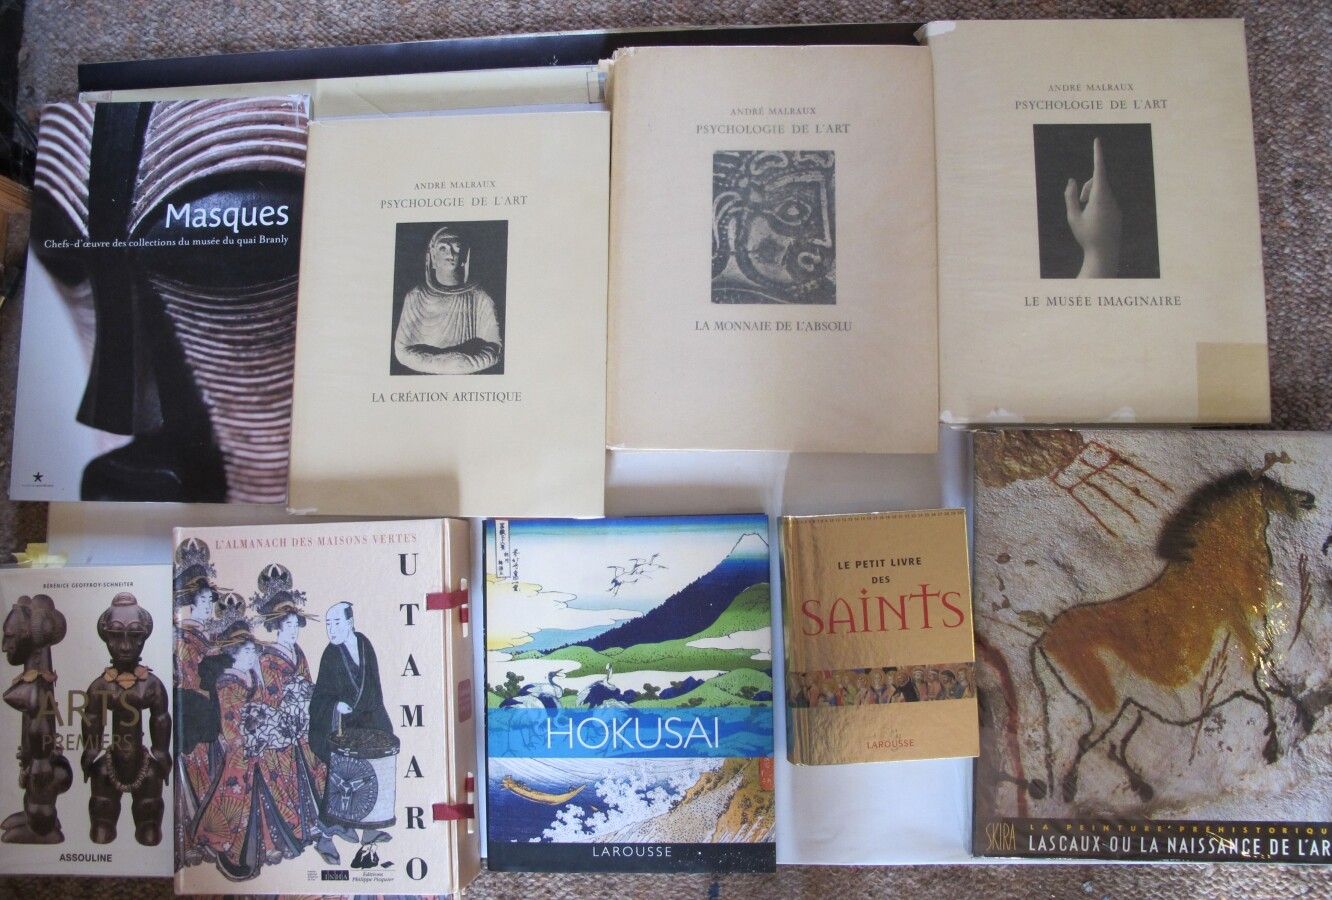 Null [HISTOIRE DE L'ART]

Ensemble de 9 ouvrages divers : André Malraux, la psyc&hellip;